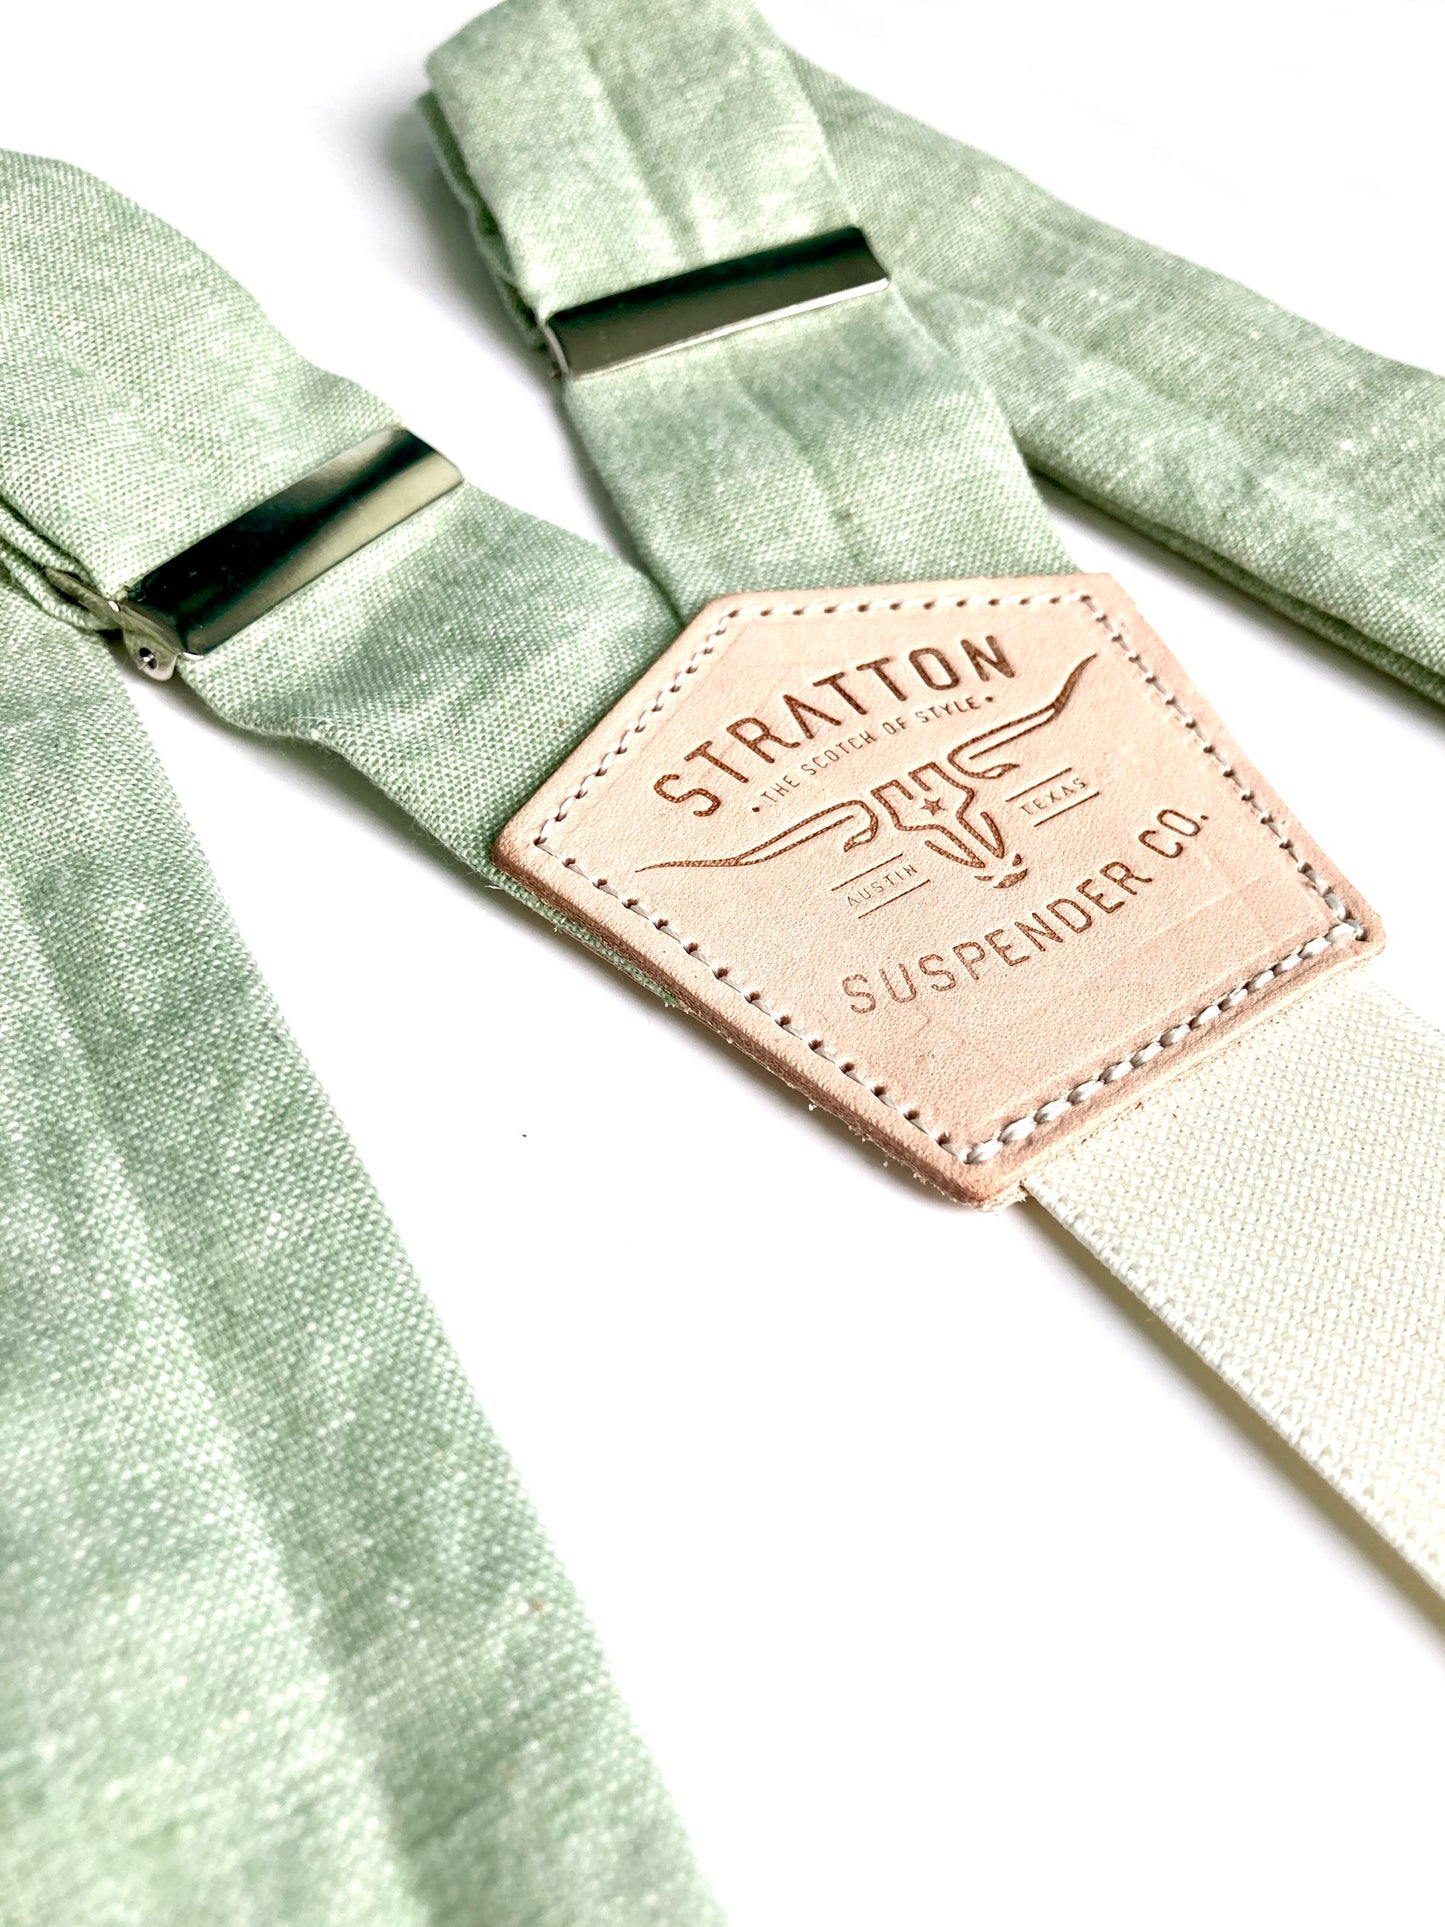 Stratton Suspender Co. Straps in Garner Green Linen